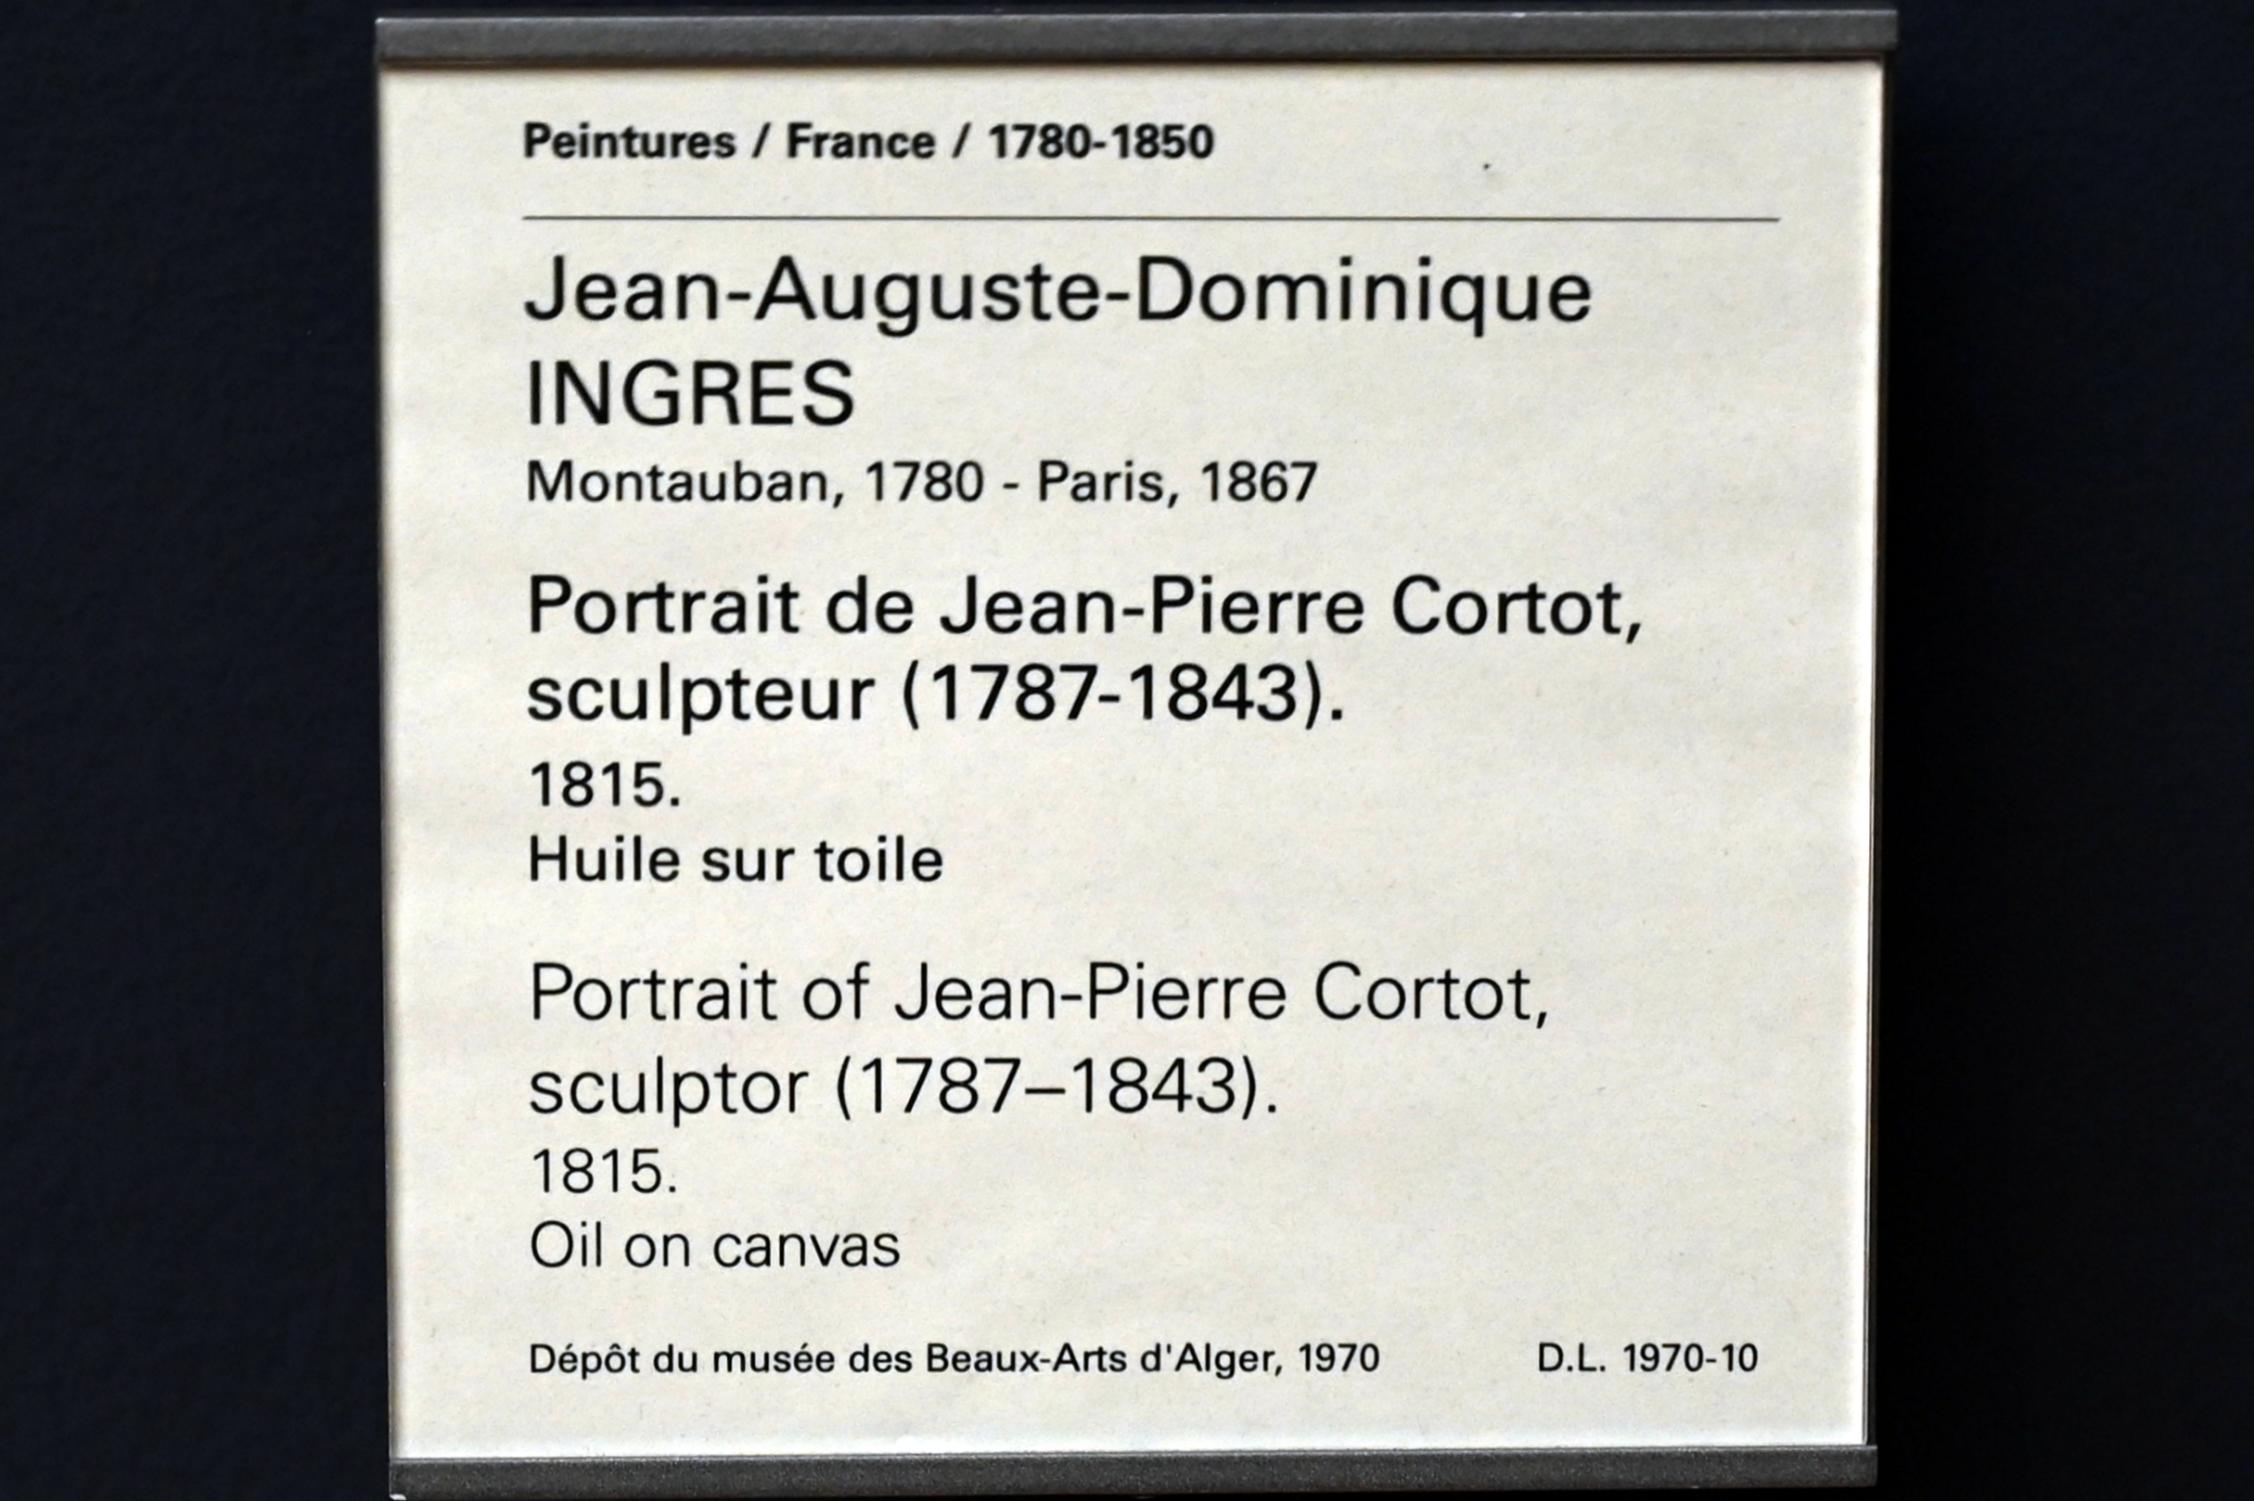 Jean-Auguste-Dominique Ingres (1805–1856), Porträt des Bildhauers Jean-Pierre Cortot (1787-1843), Paris, Musée du Louvre, Saal 940, 1815, Bild 2/2